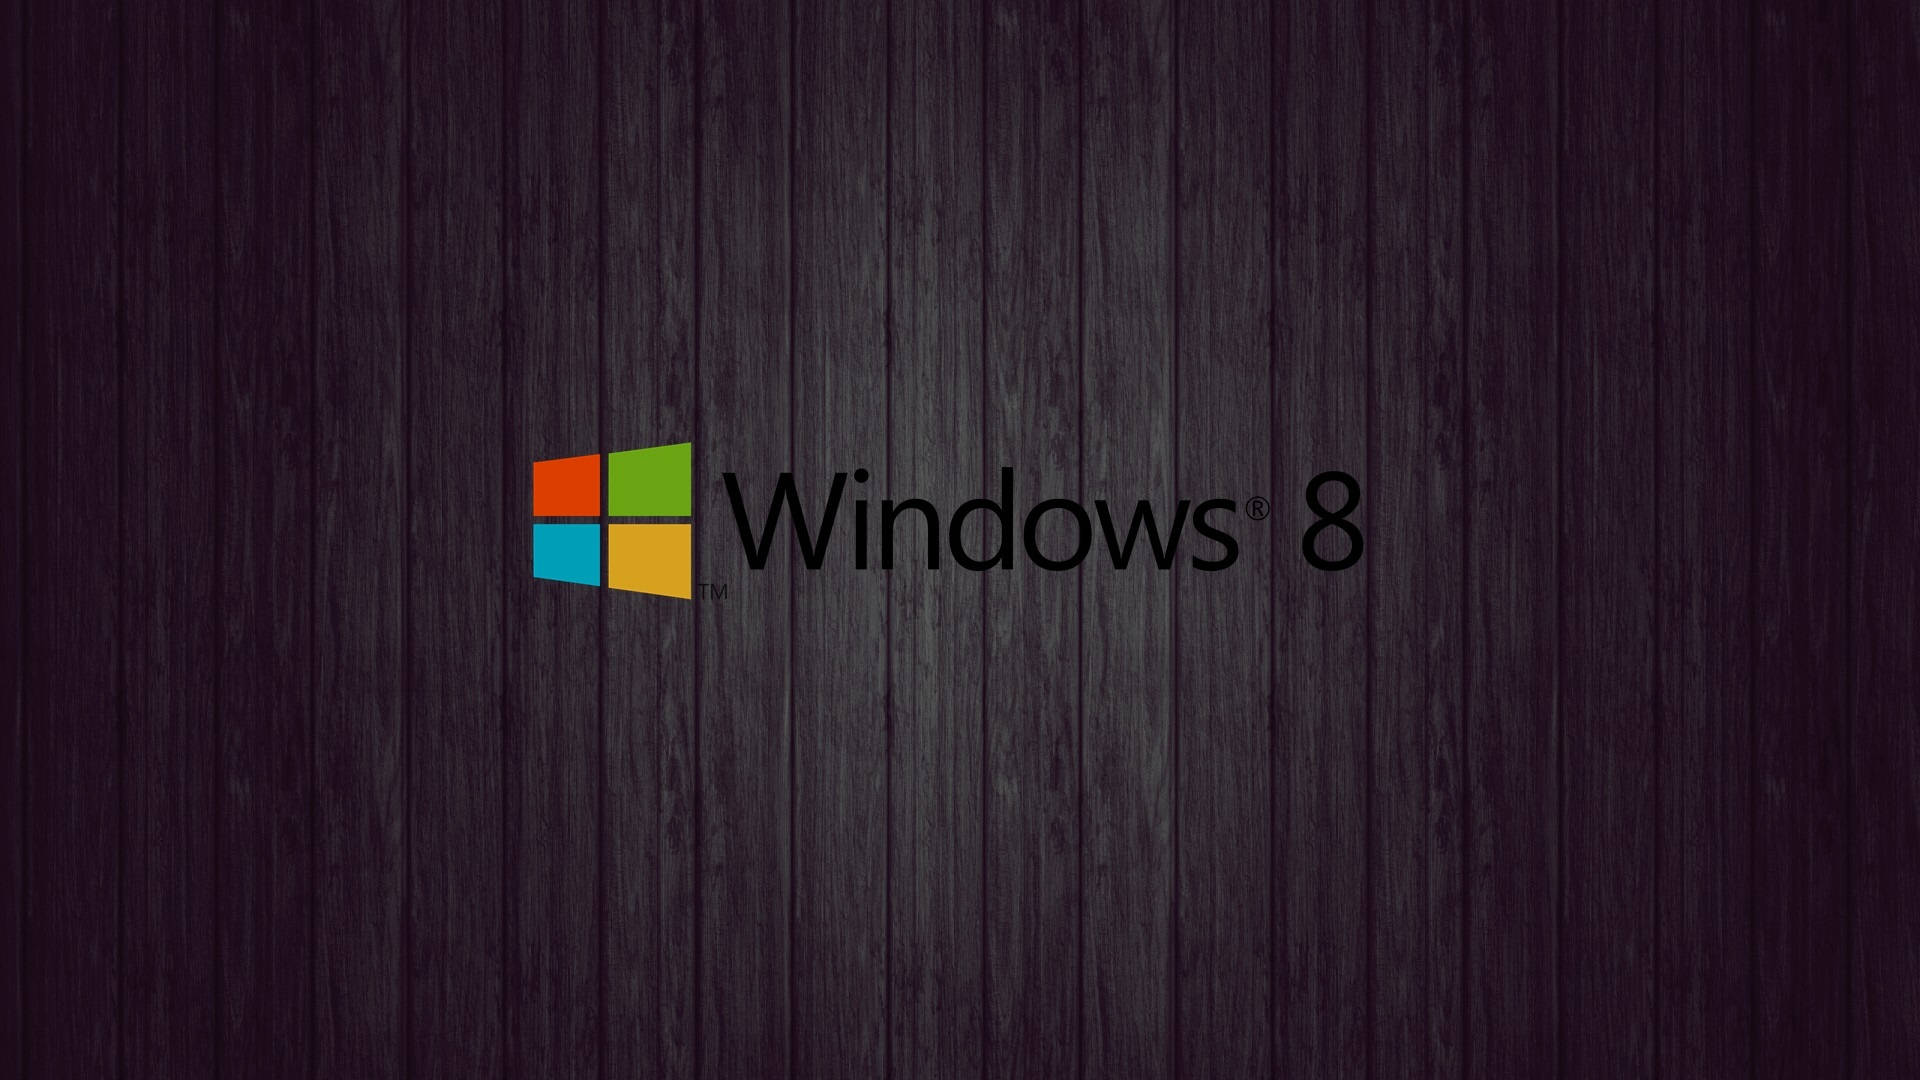 Fondode Pantalla De Windows 8 De Madera Oscura. Fondo de pantalla